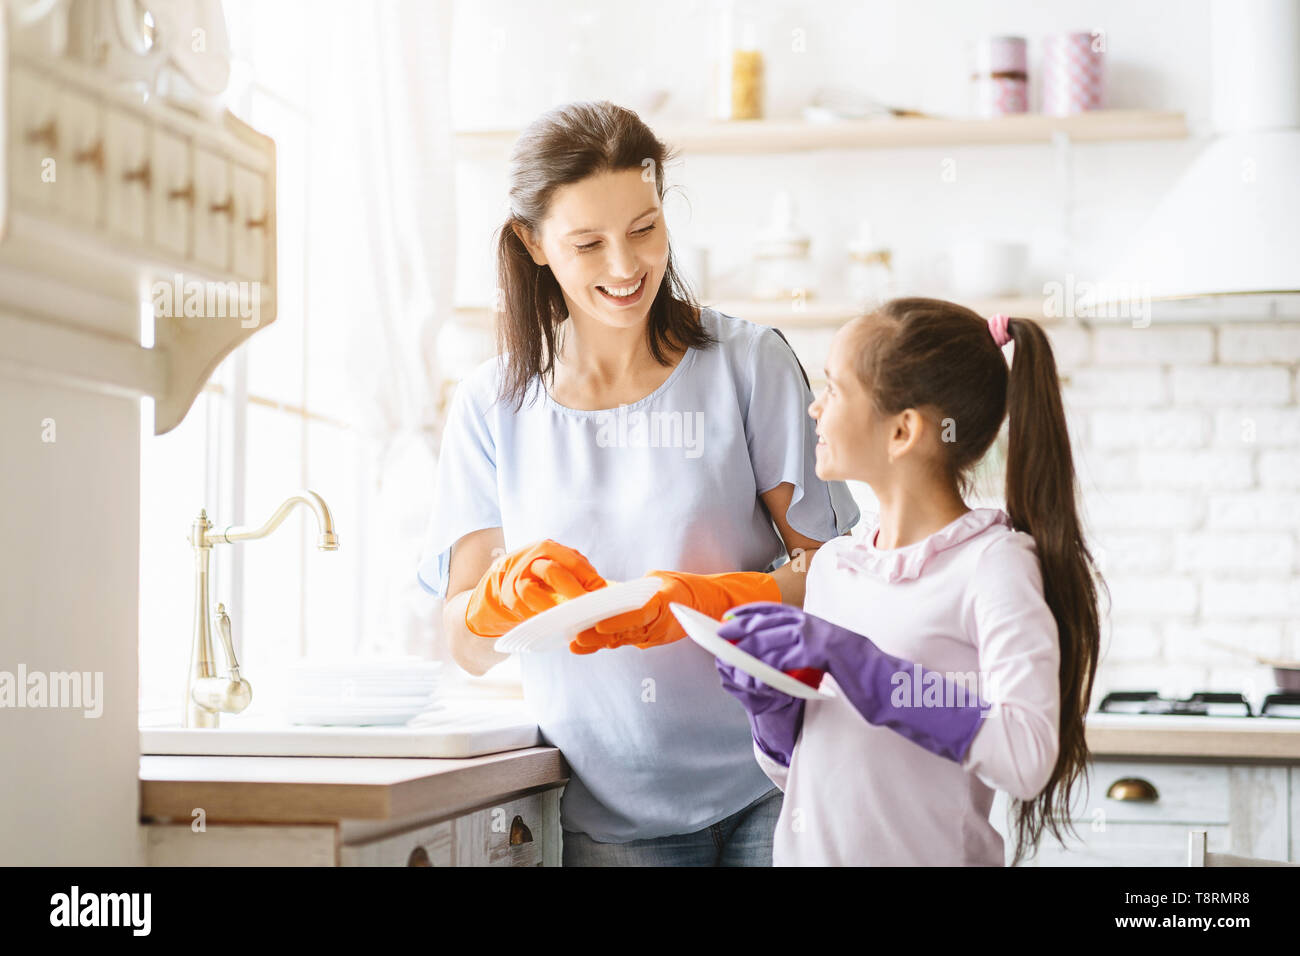 Coup de main. Cute girl aider sa mère dans un lave-vaisselle à la cuisine familiale Banque D'Images